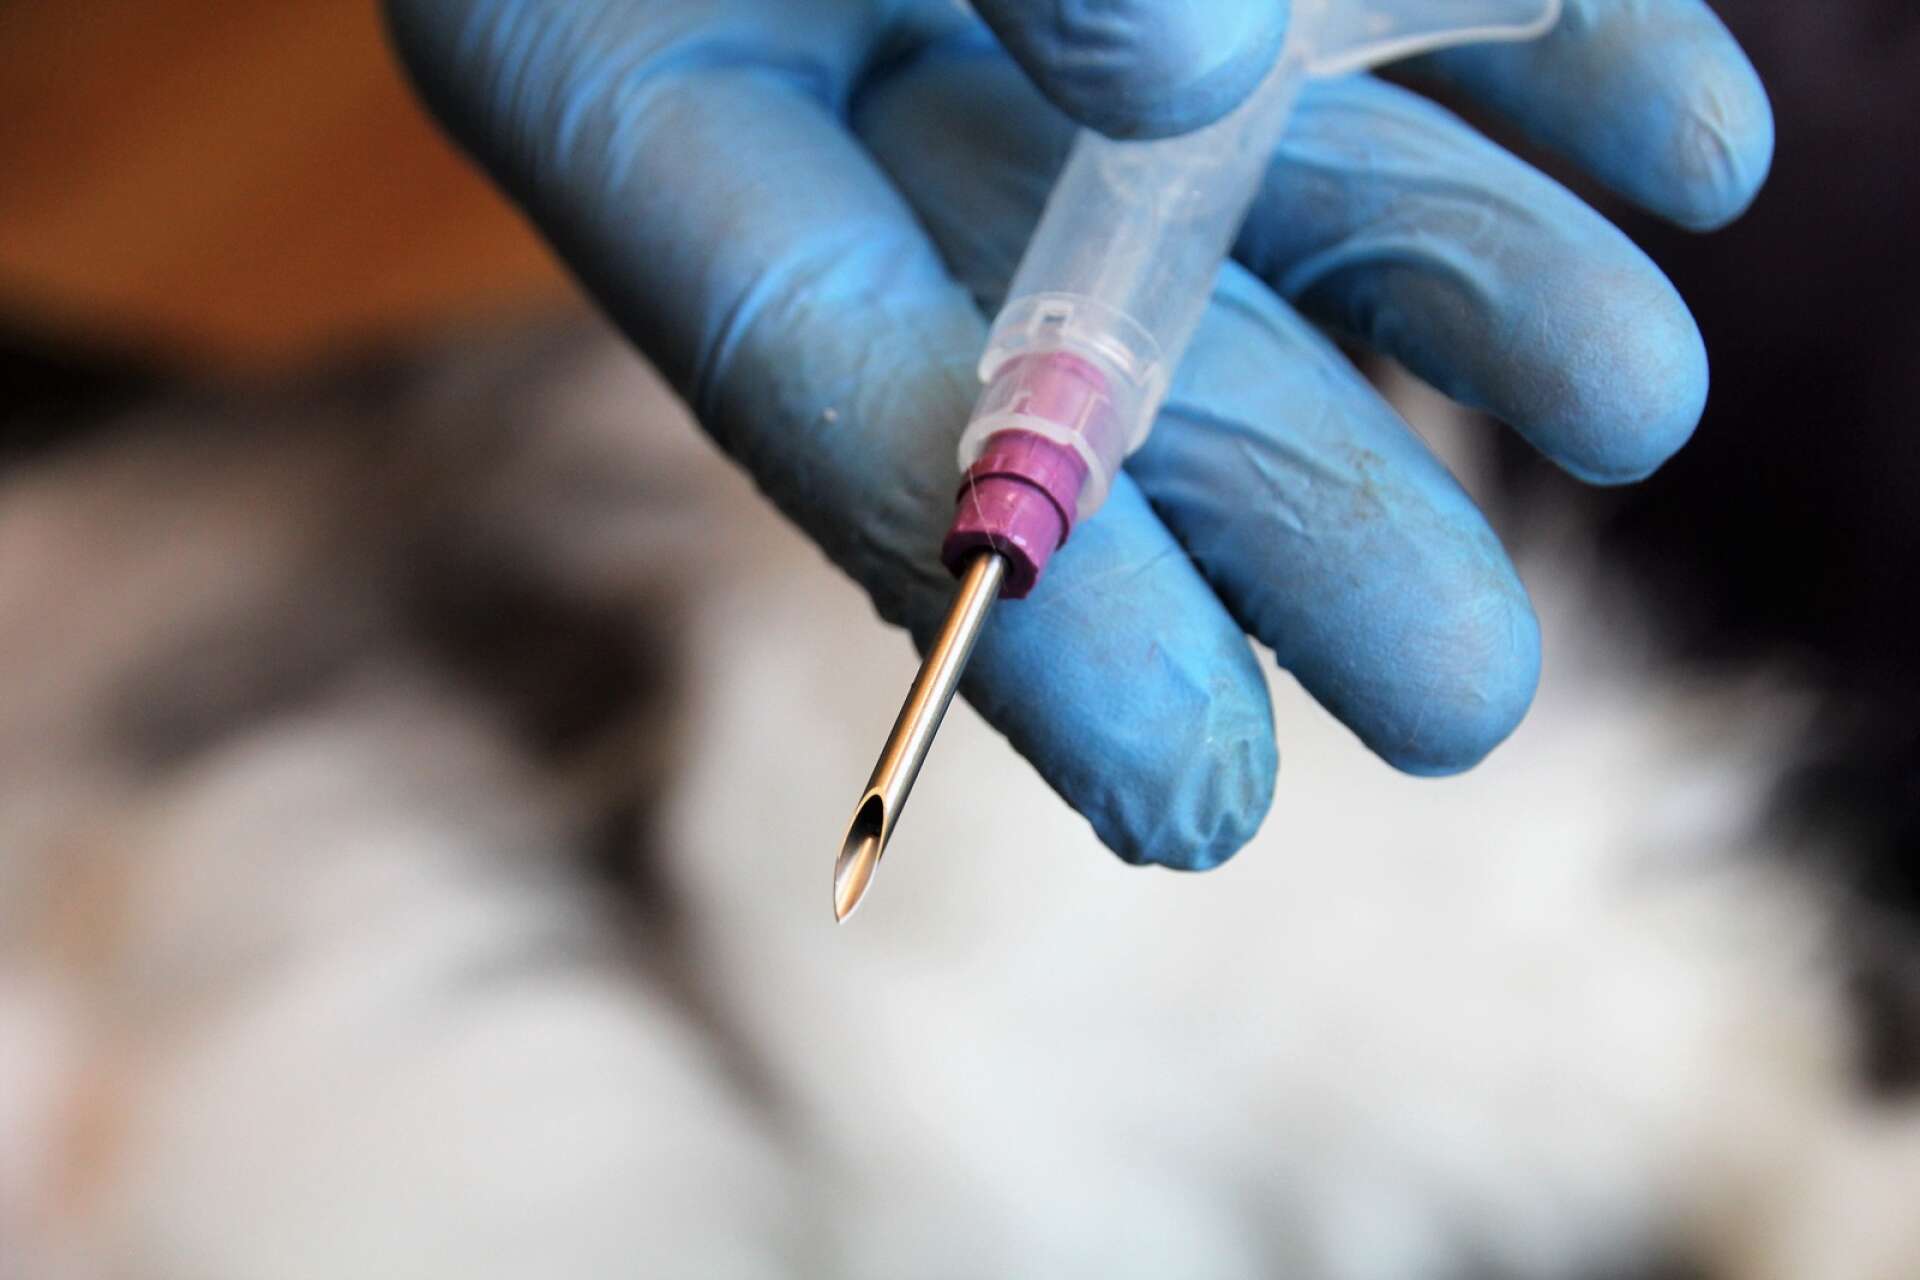 Chippet sätts med hjälp av en nål in under huden i kattens nacke